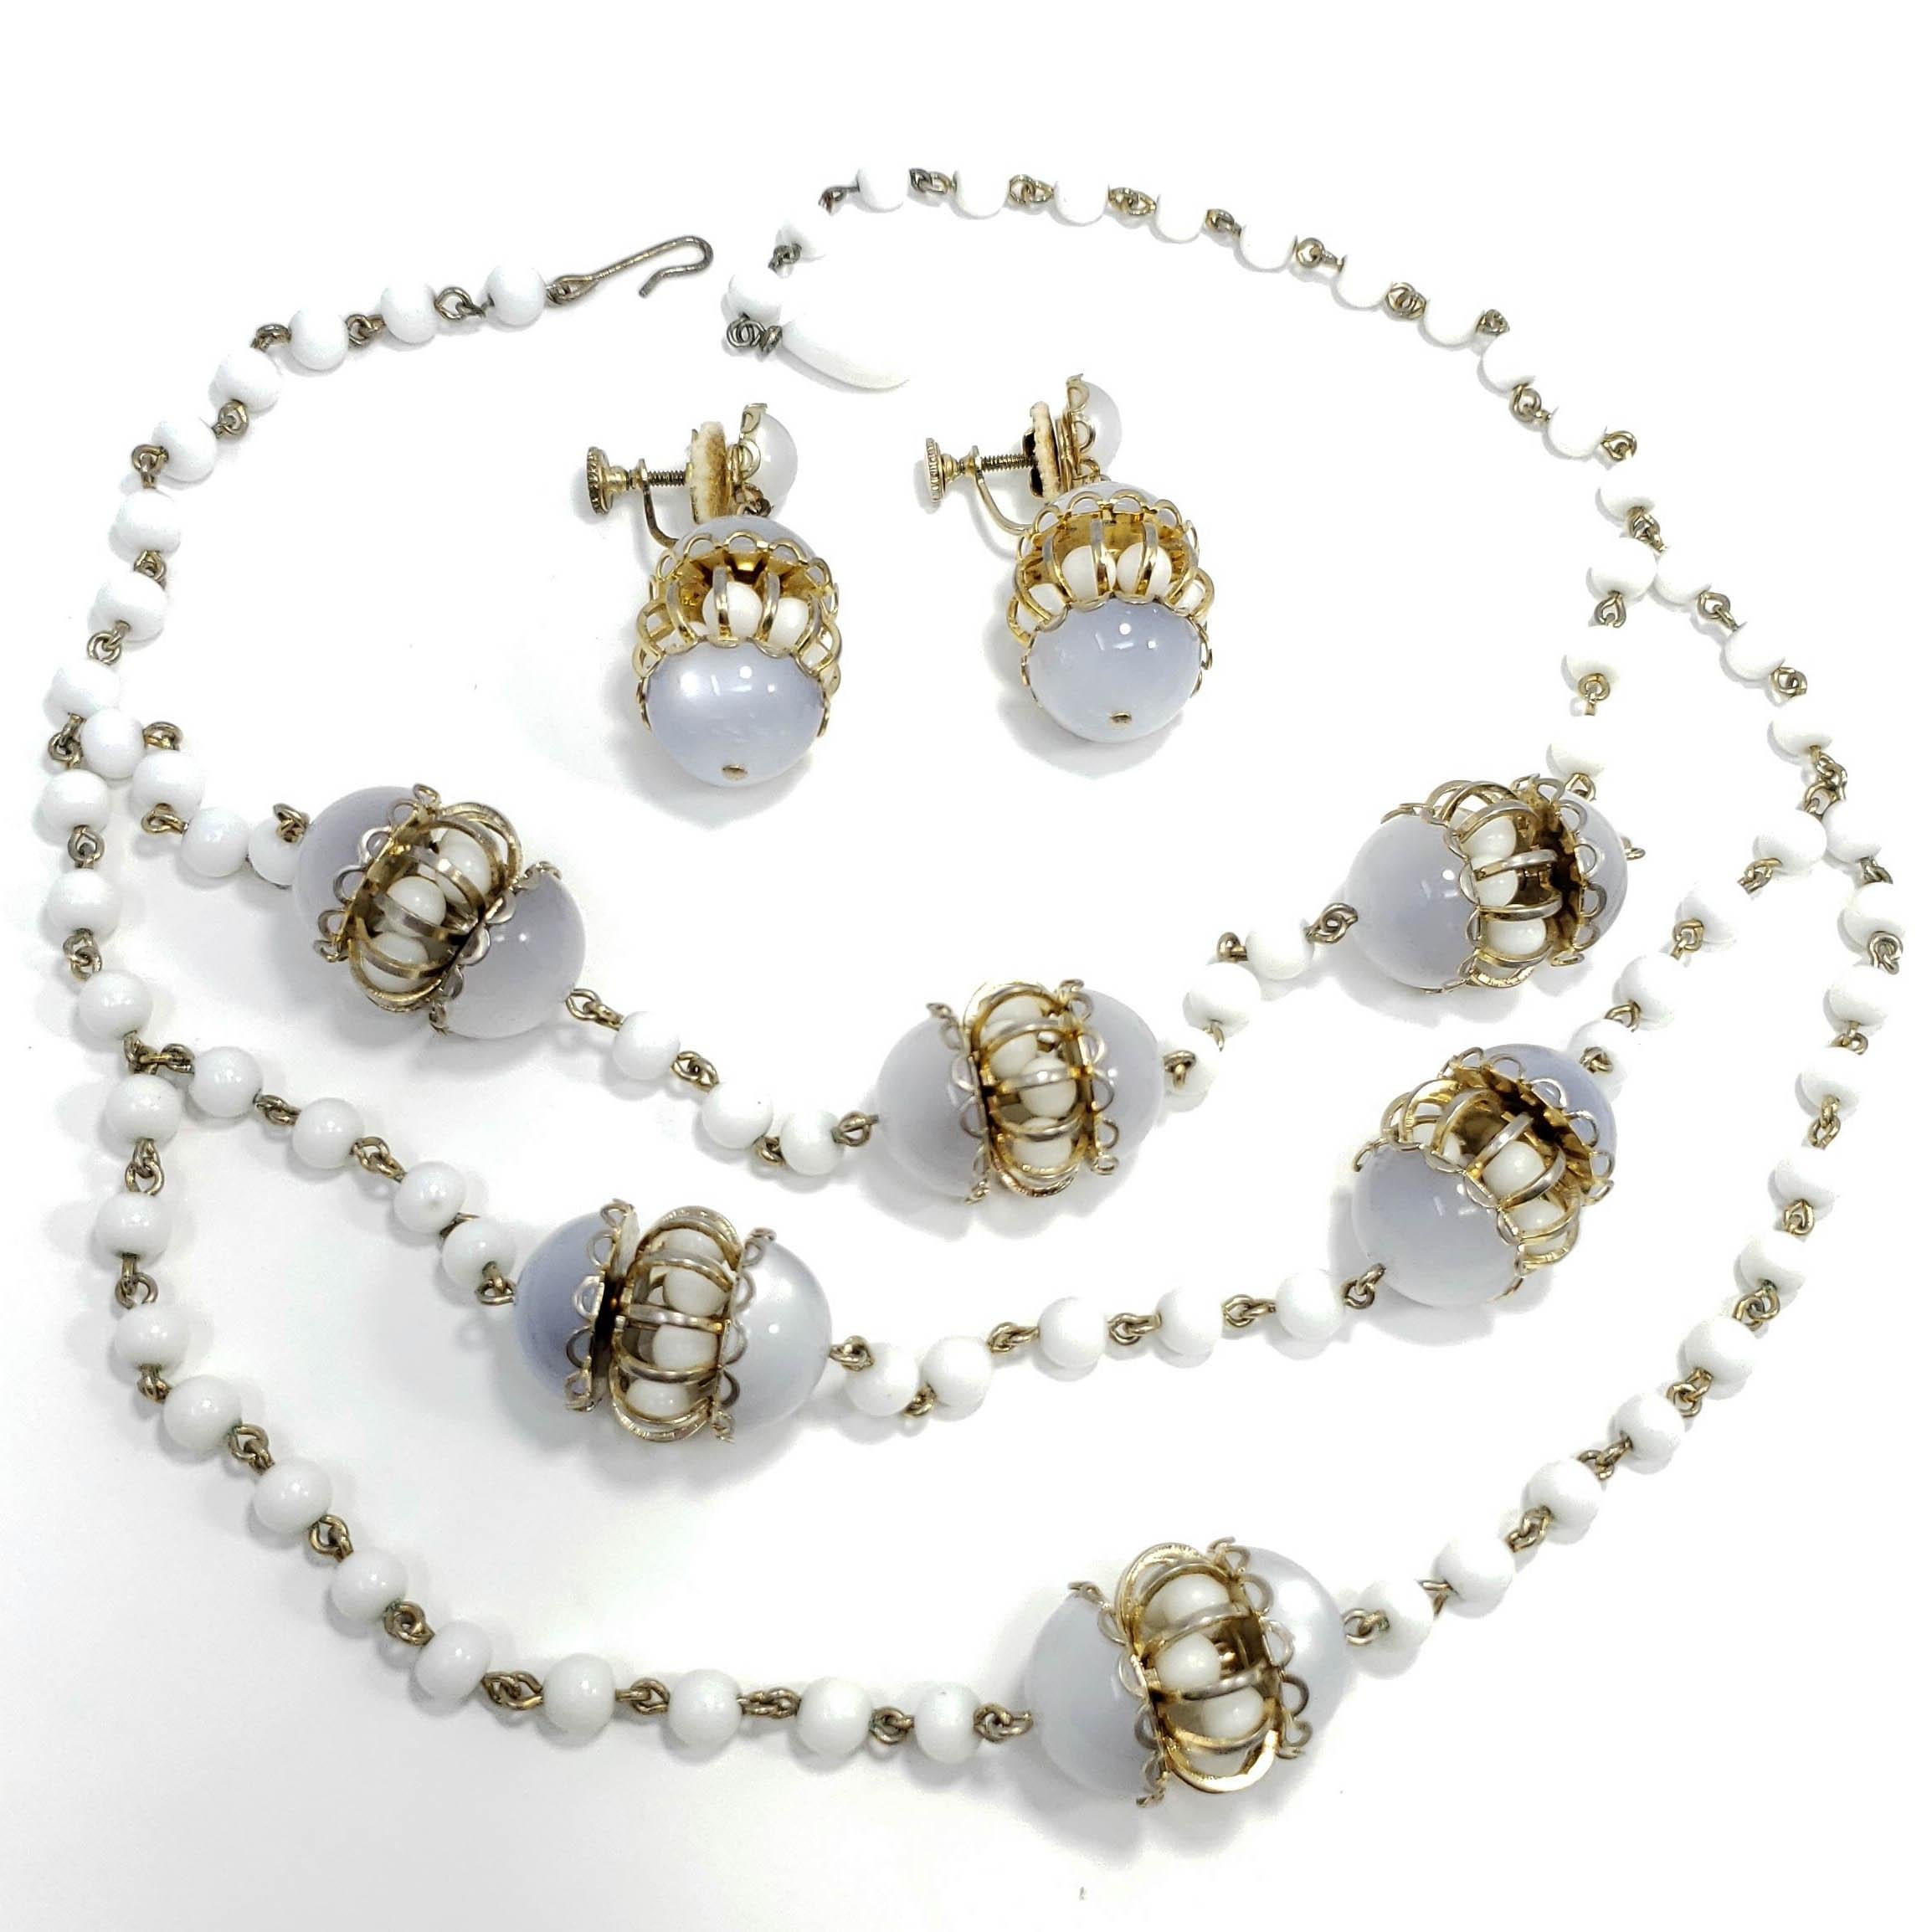 Mehrreihige Halskette und Ohrringe aus Mondschein-Lucit und Milchglasperlen, die zueinander passen. Die Halskette besteht aus dekorativen Kammeranhängern aus Lucit und Milchglas, die an einer mehrsträngigen Milchglasperlenkette befestigt sind. Zu